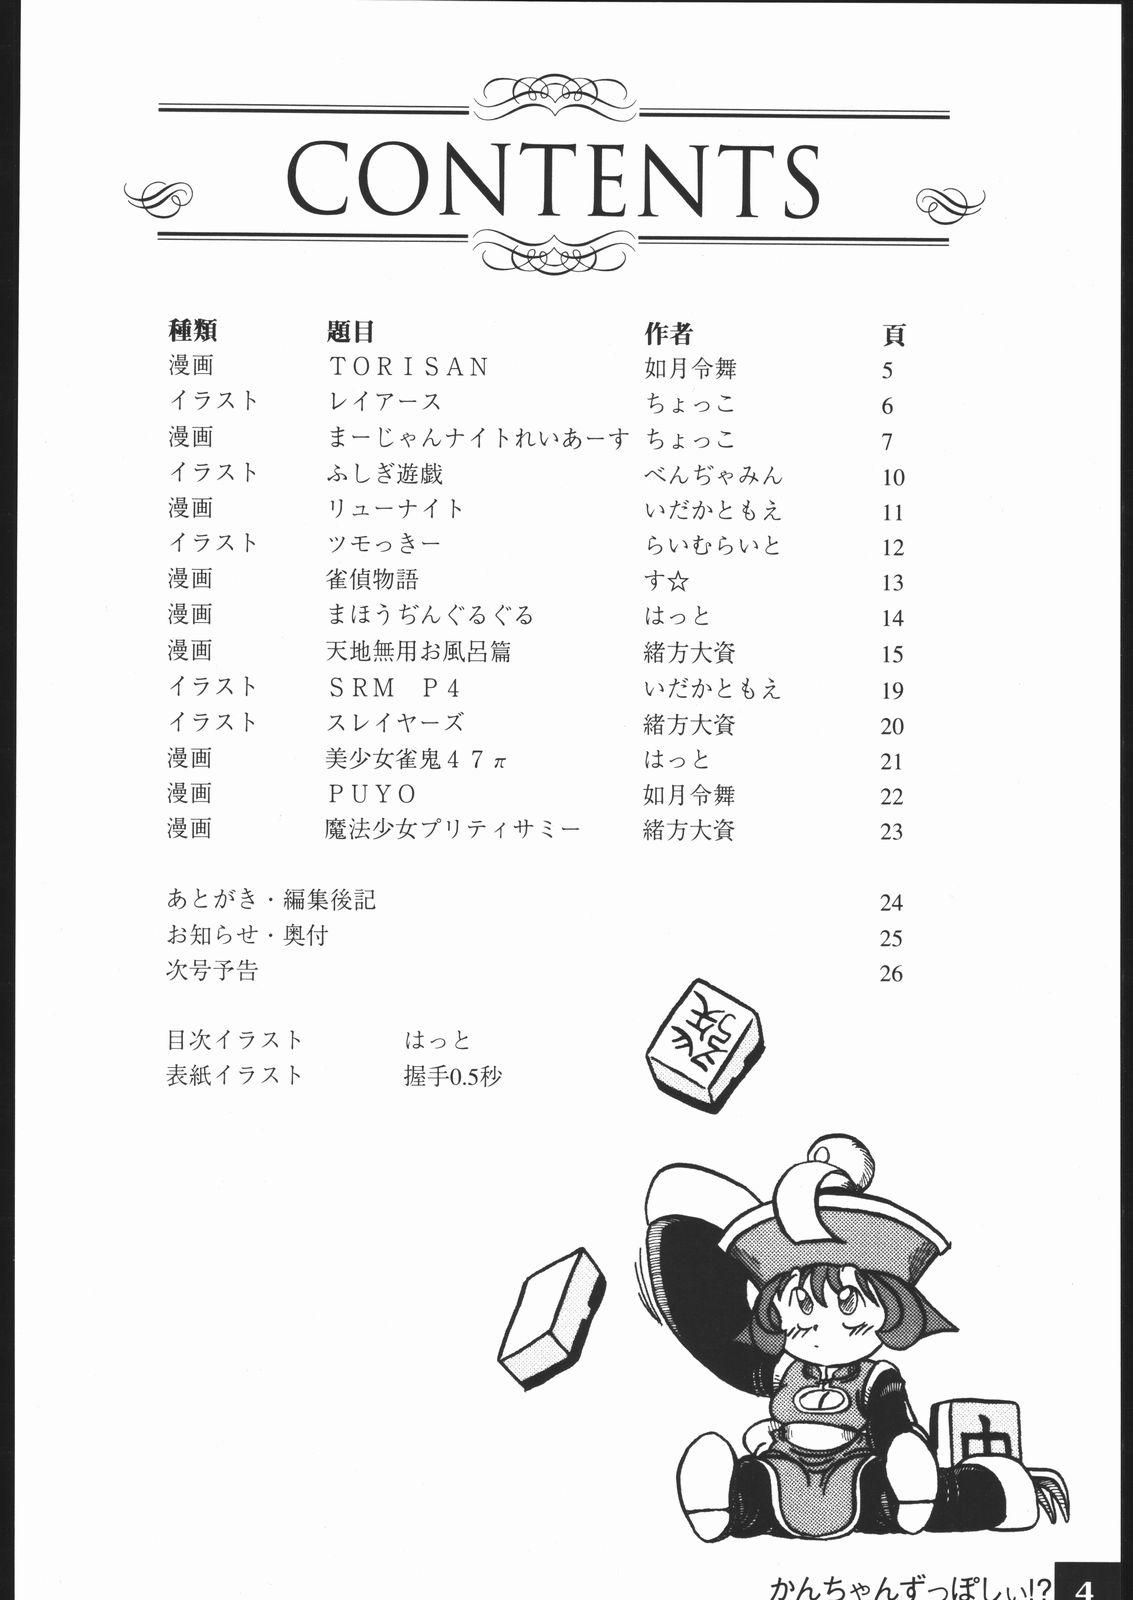 Comendo kantyan zupposhi - Tenchi muyo Wet - Page 3